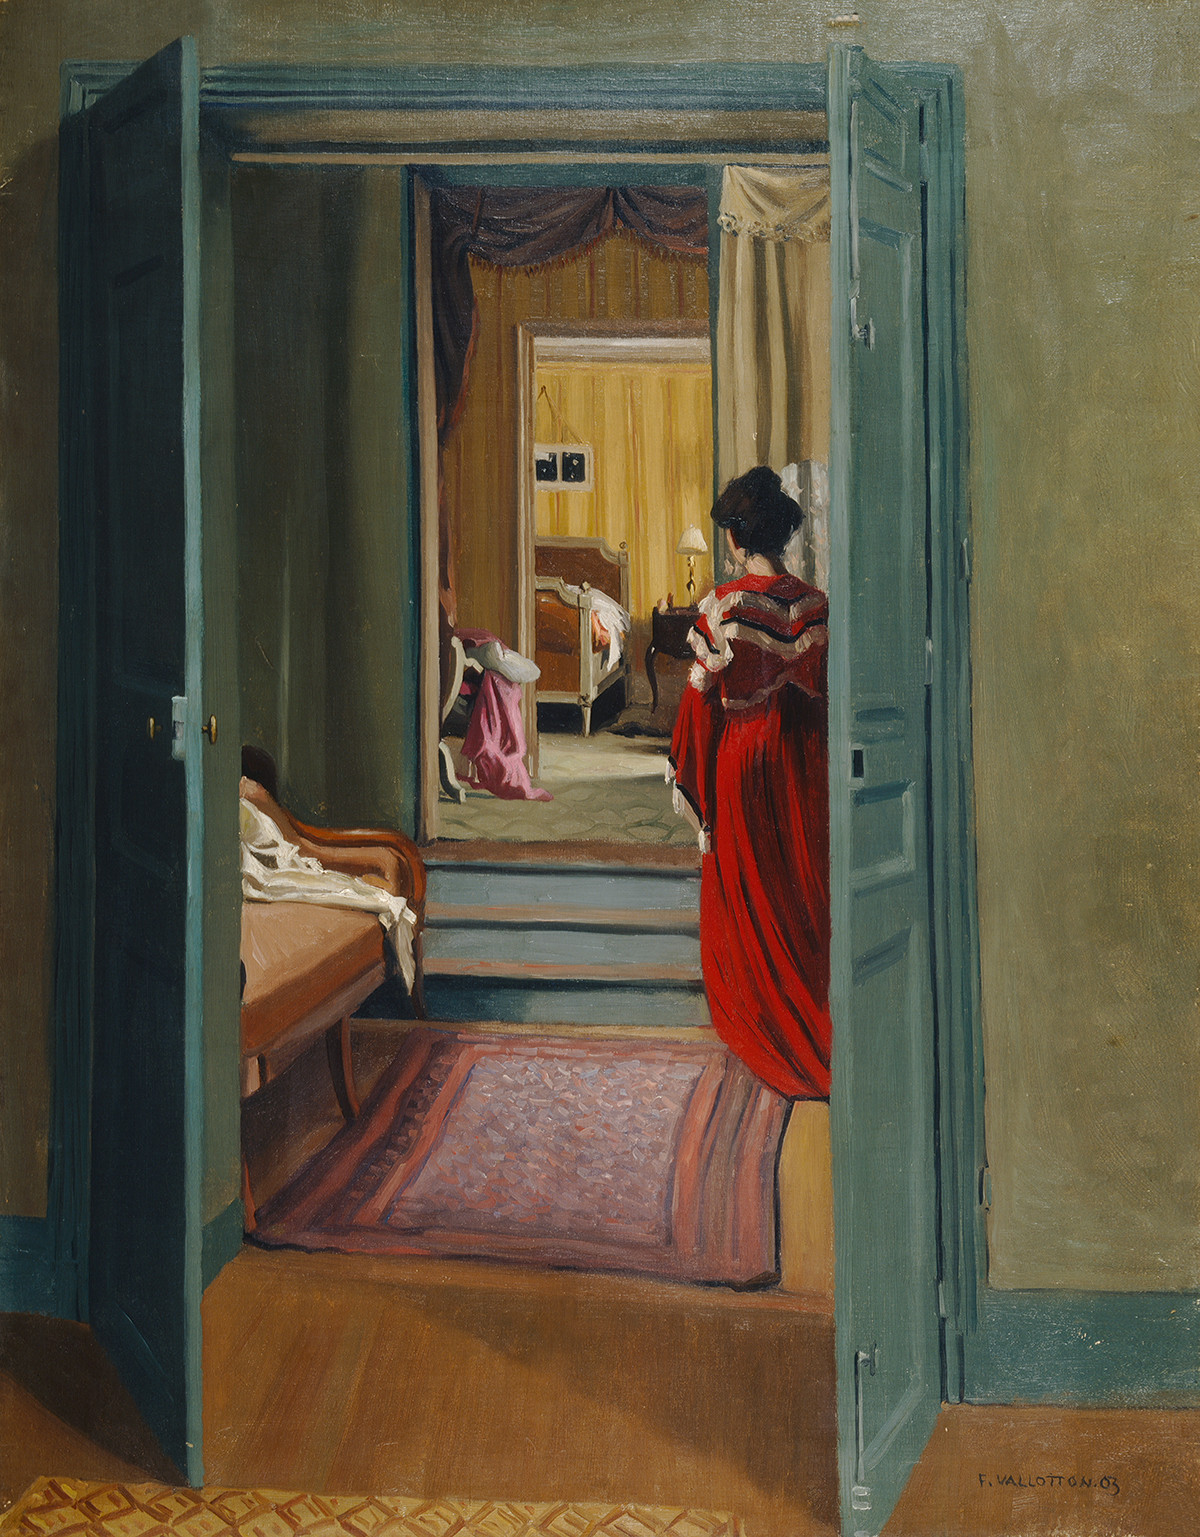 有红衣女子的室内景象 by 费利克斯 瓦洛顿 - 1903 - 92.5 x 70.5 cm 苏黎世美术馆